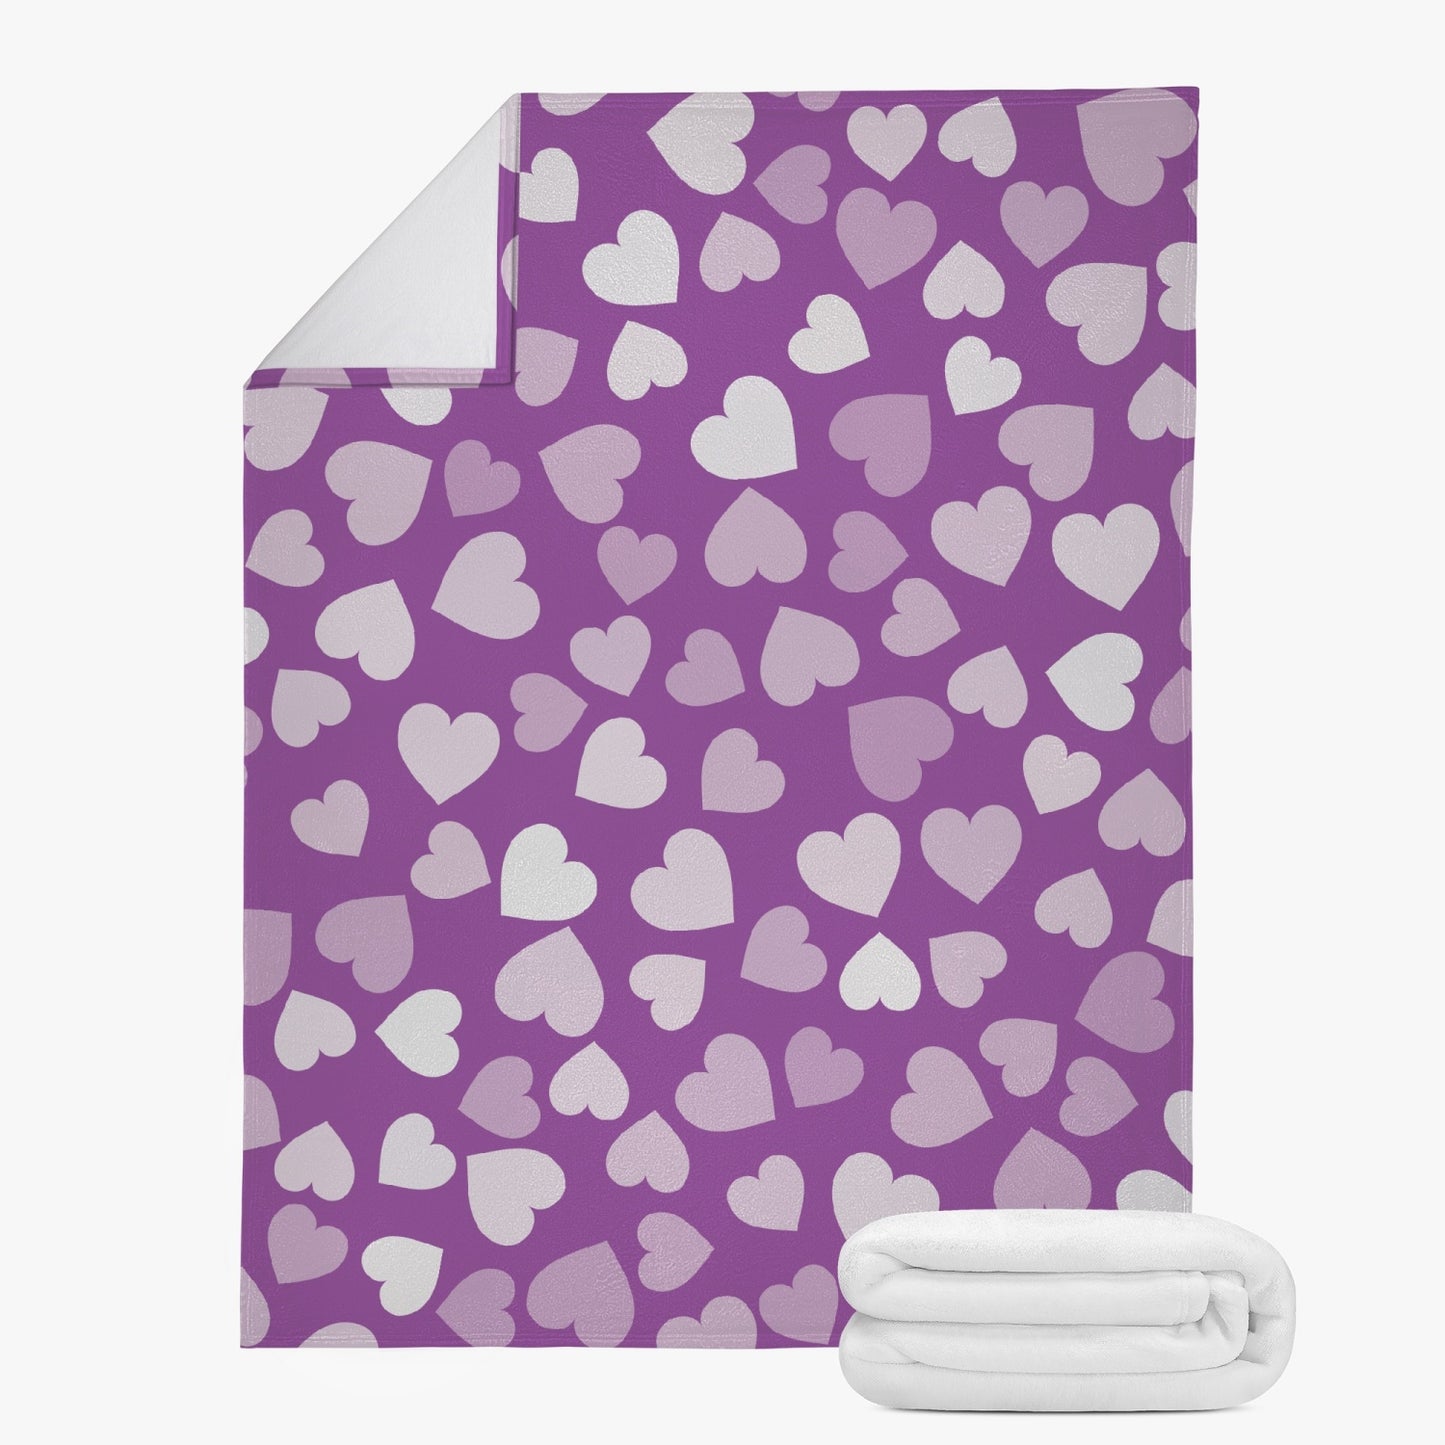 Purple Heart Fleece Blanket